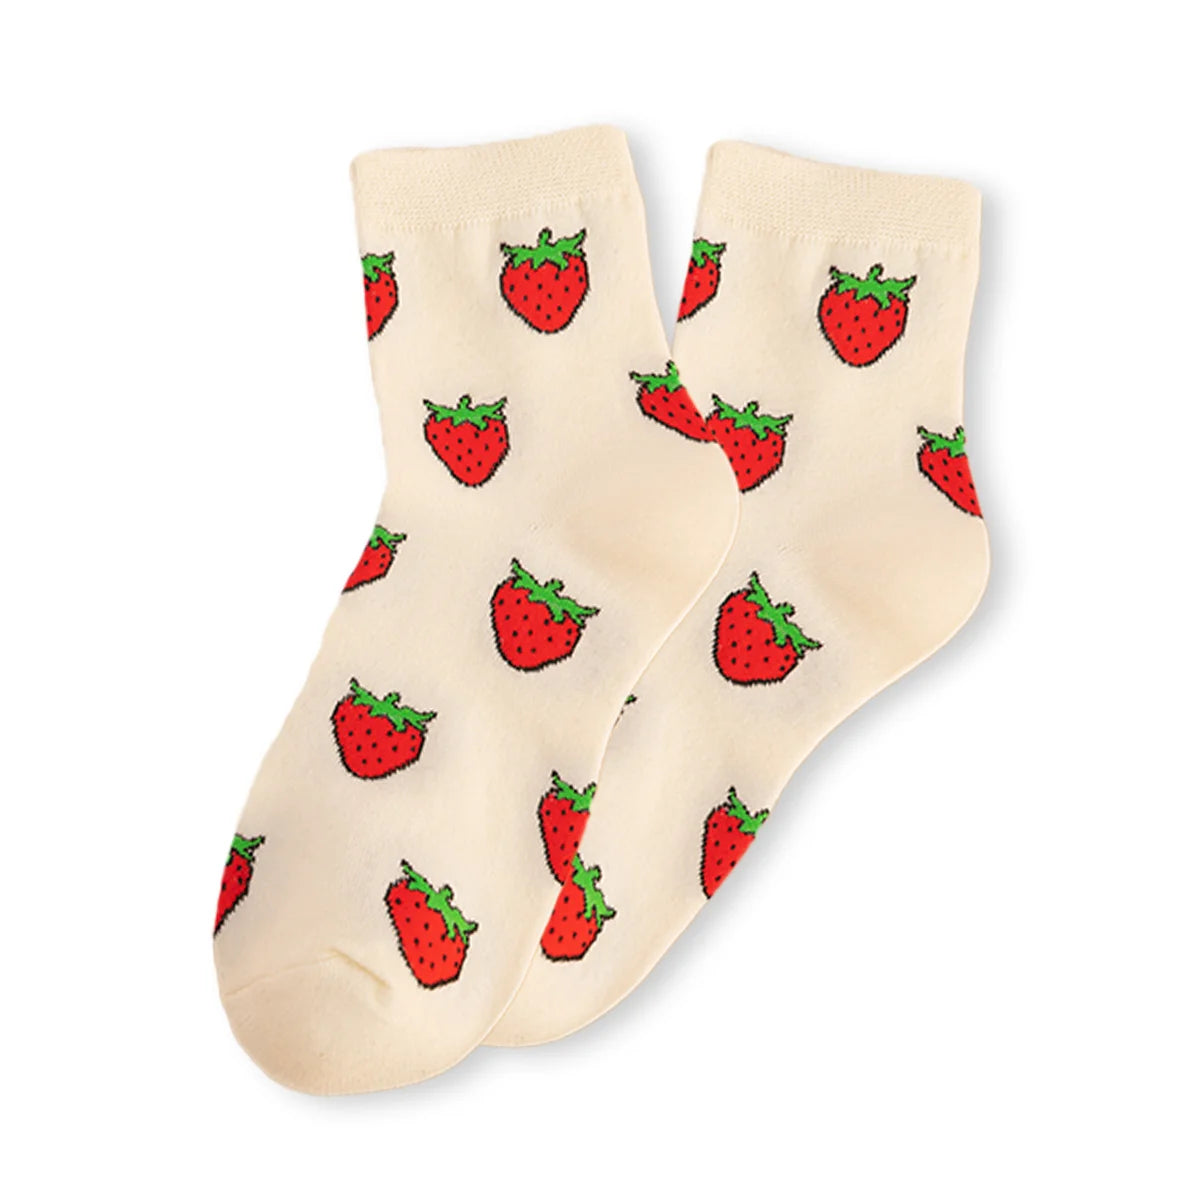 Chaussettes fraises longues en coton à motif fruit pour adultes | Chaussettes douces et confortables | Fabriquées à partir de matériaux de haute qualité | Un cadeau parfait pour les hommes et les femmes de tous âges